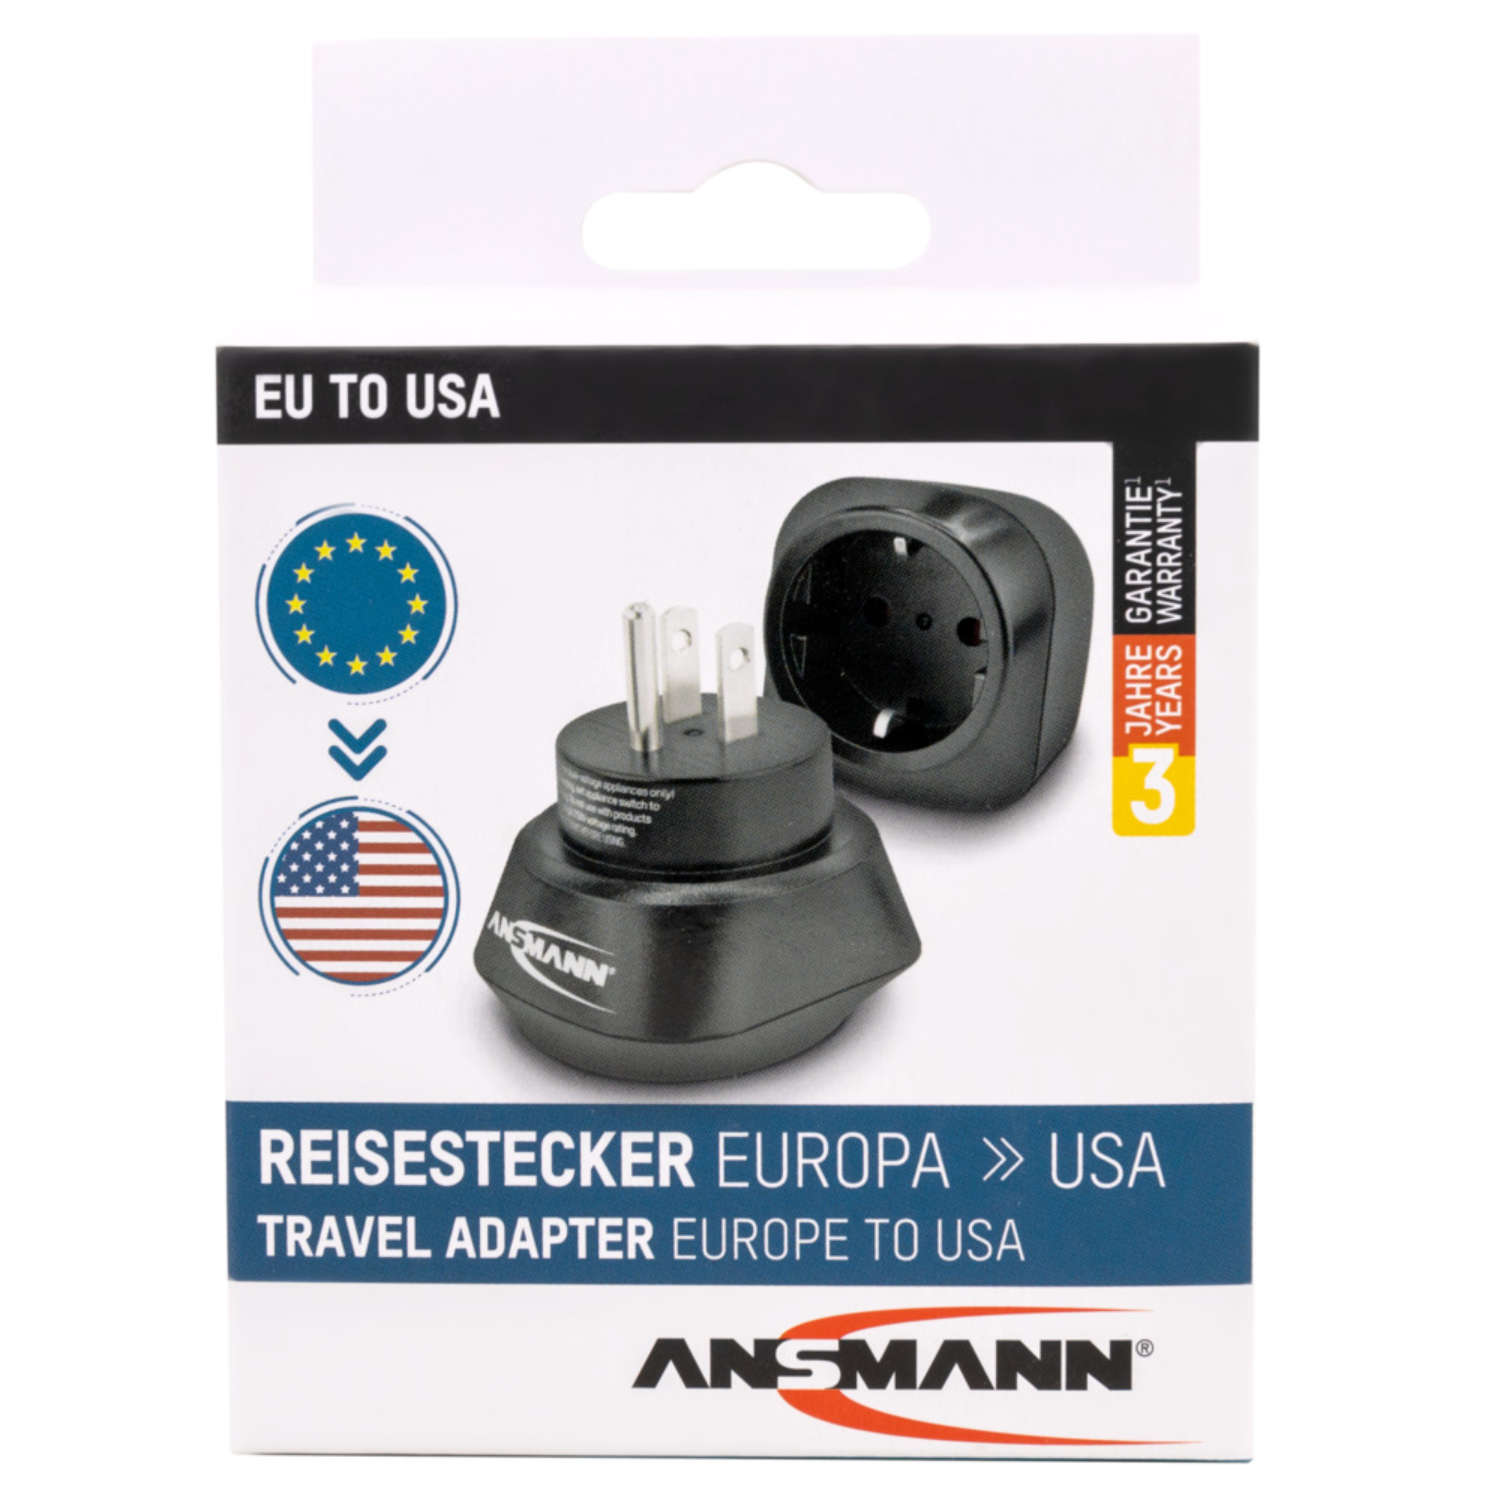 ANSMANN Reiseadapter "Europe to USA"